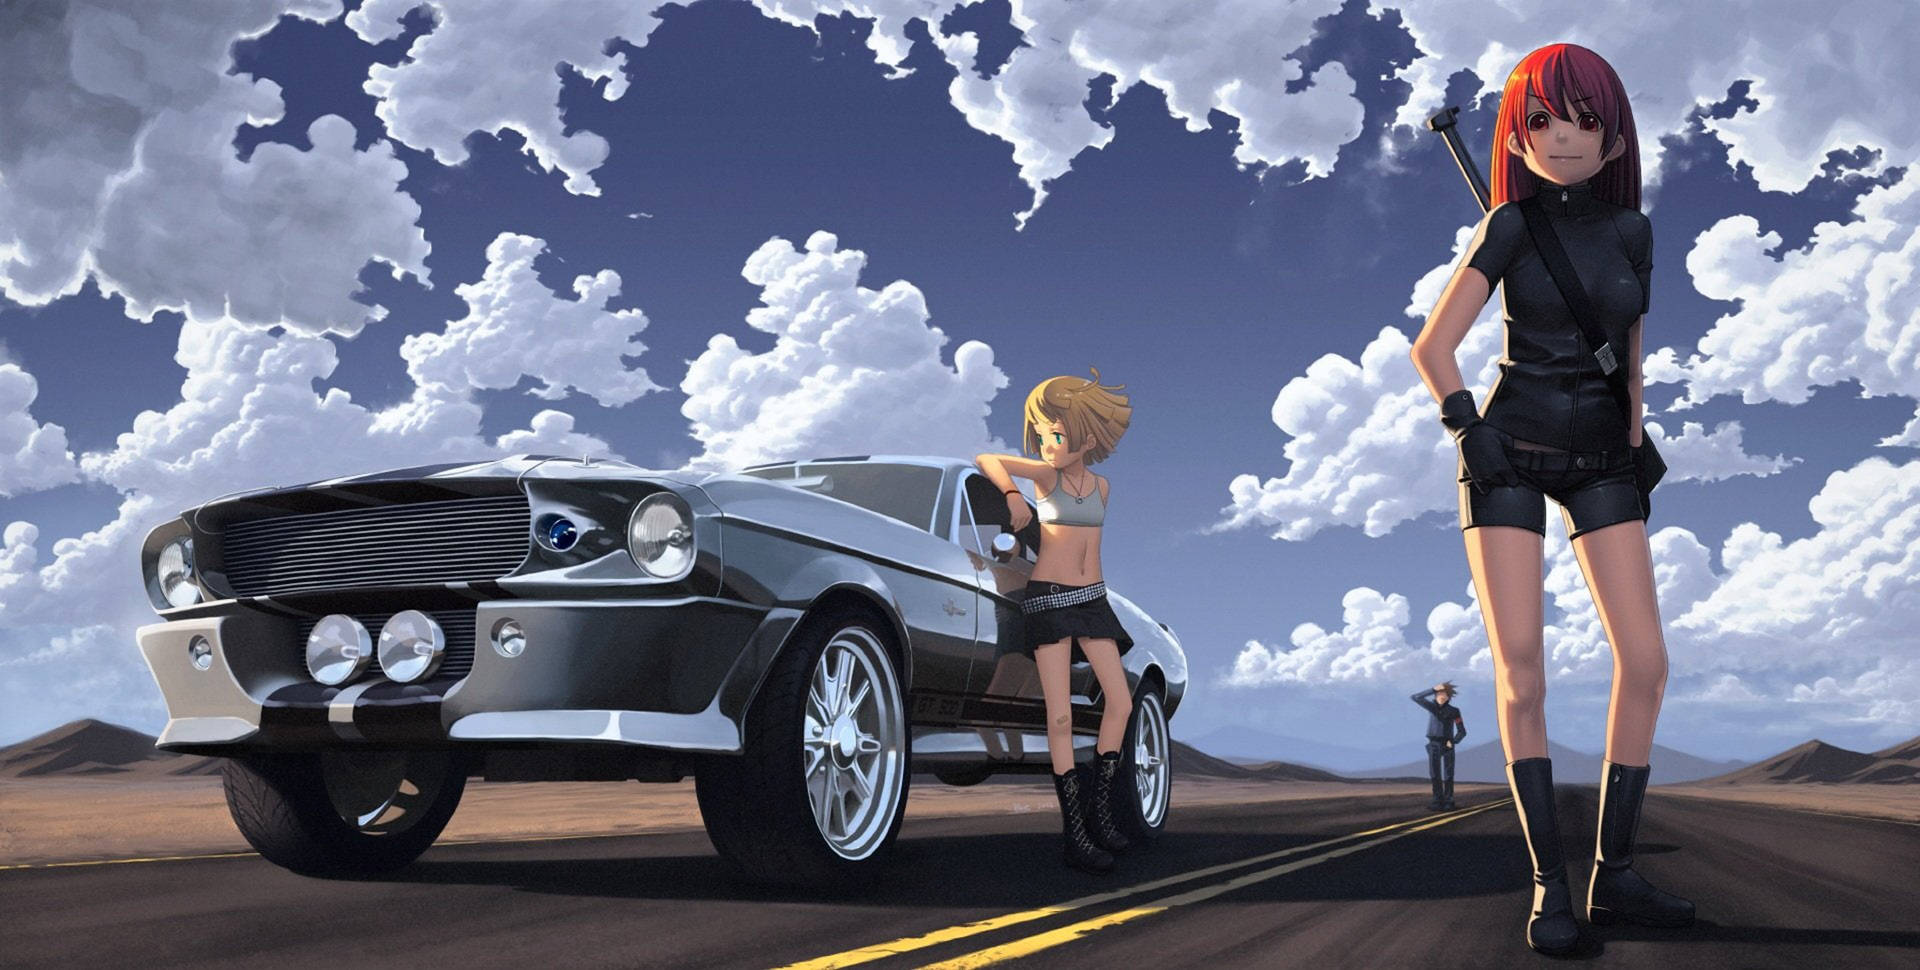 Mustang Anime Car